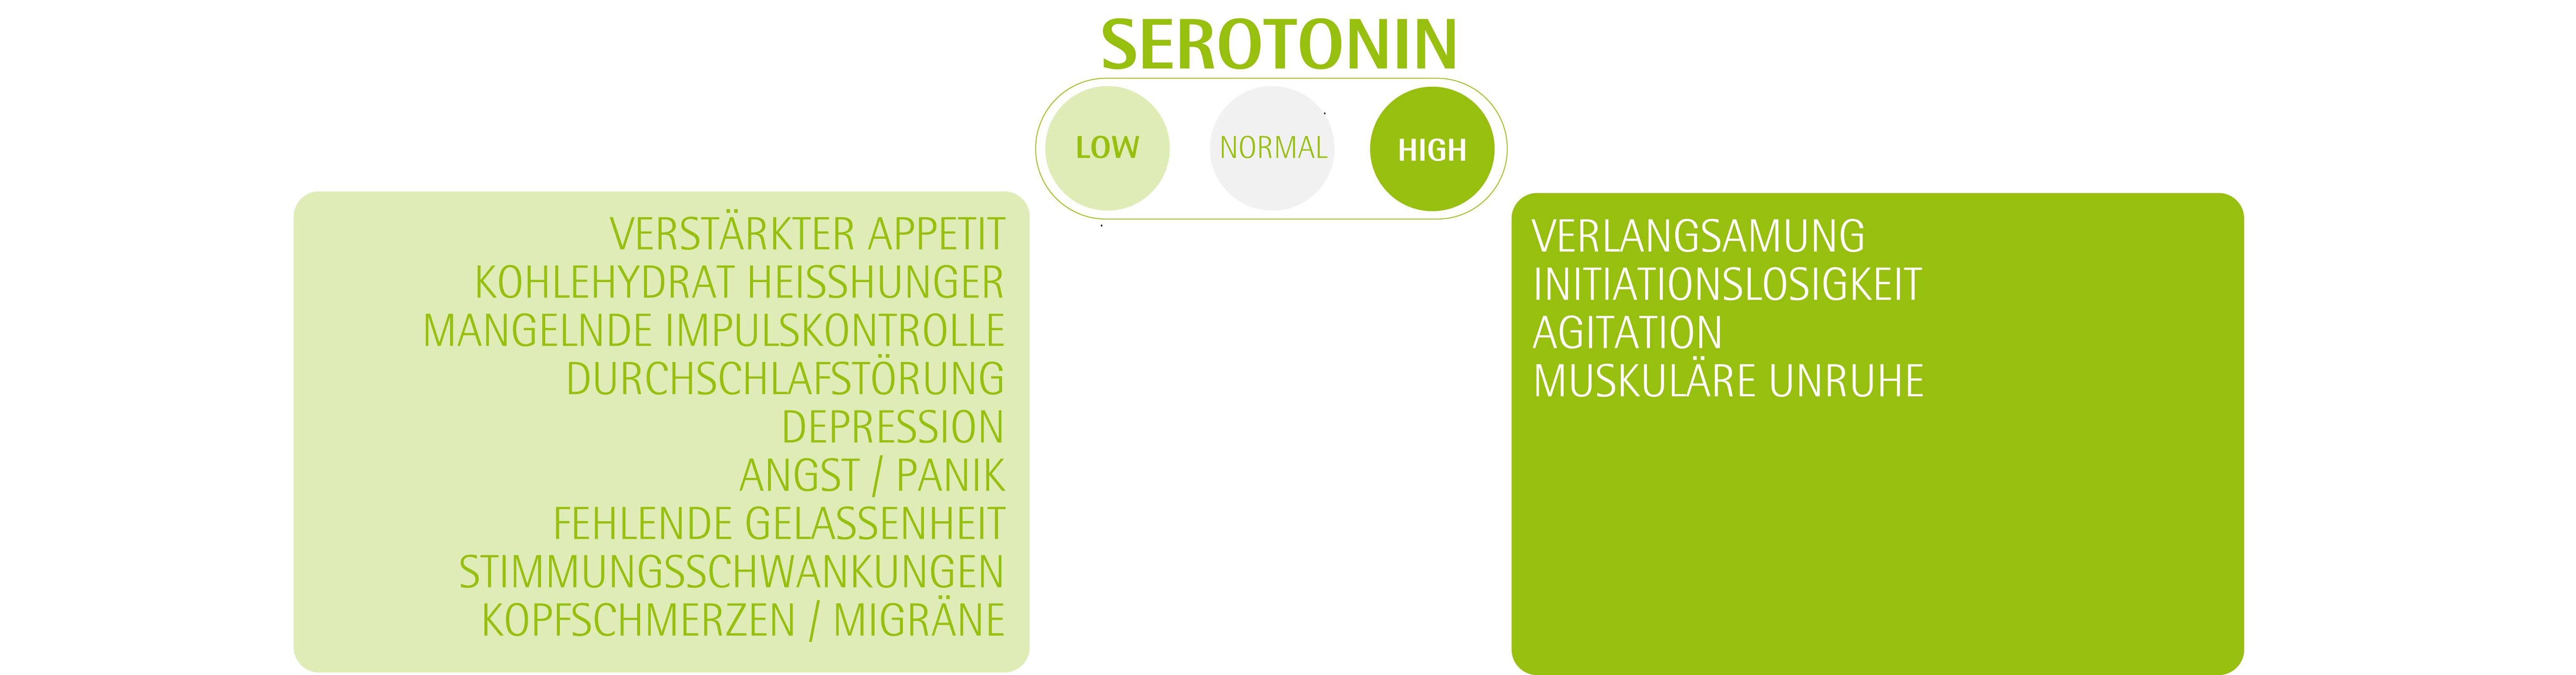 Grafik des AMM-Partners "YourPrevention" zu Serotonin